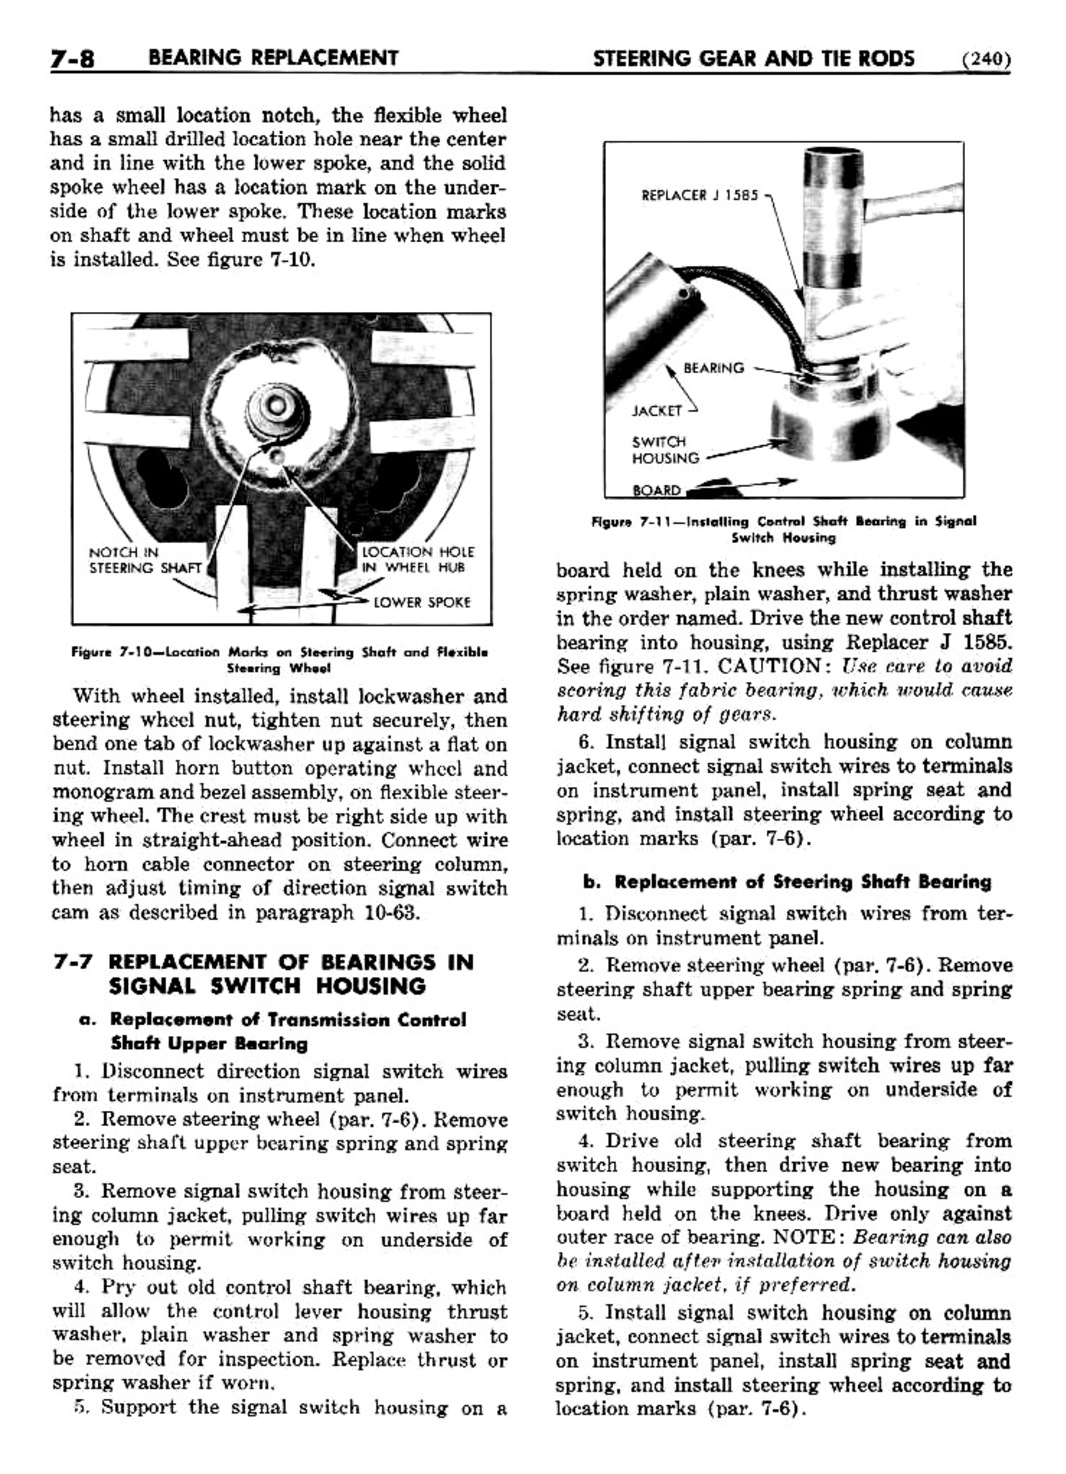 n_08 1948 Buick Shop Manual - Steering-008-008.jpg